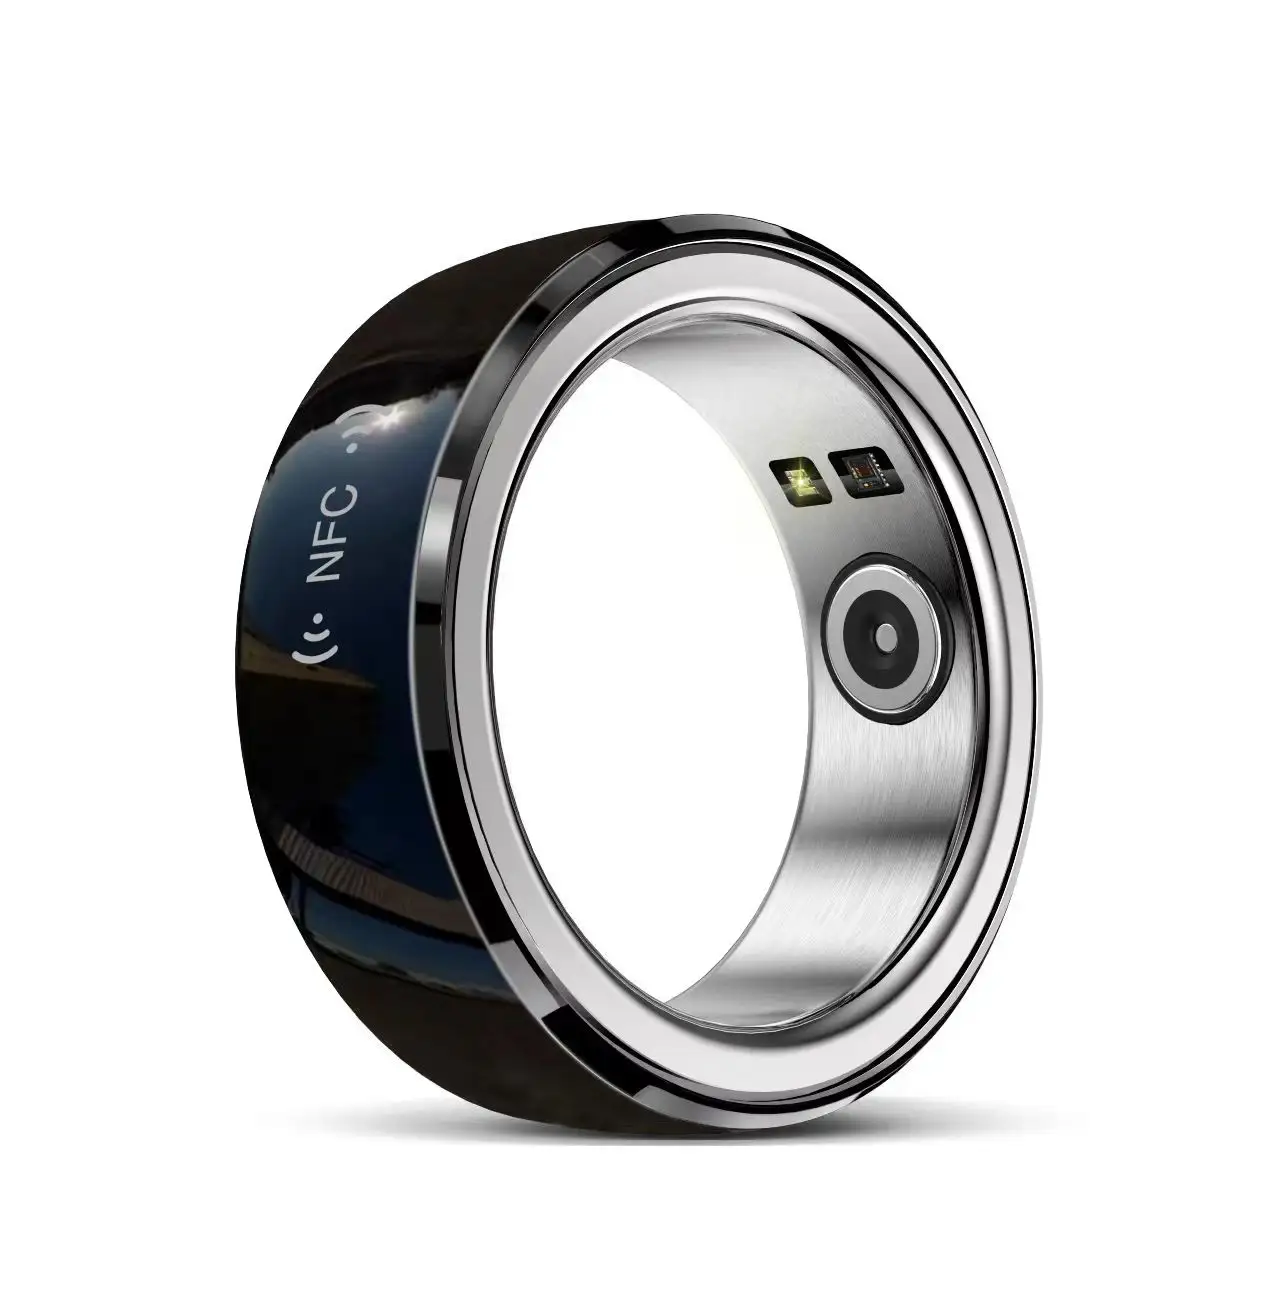 Фитнес ходьба на открытом воздухе бег инновационное научное и технологическое умное кольцо R2